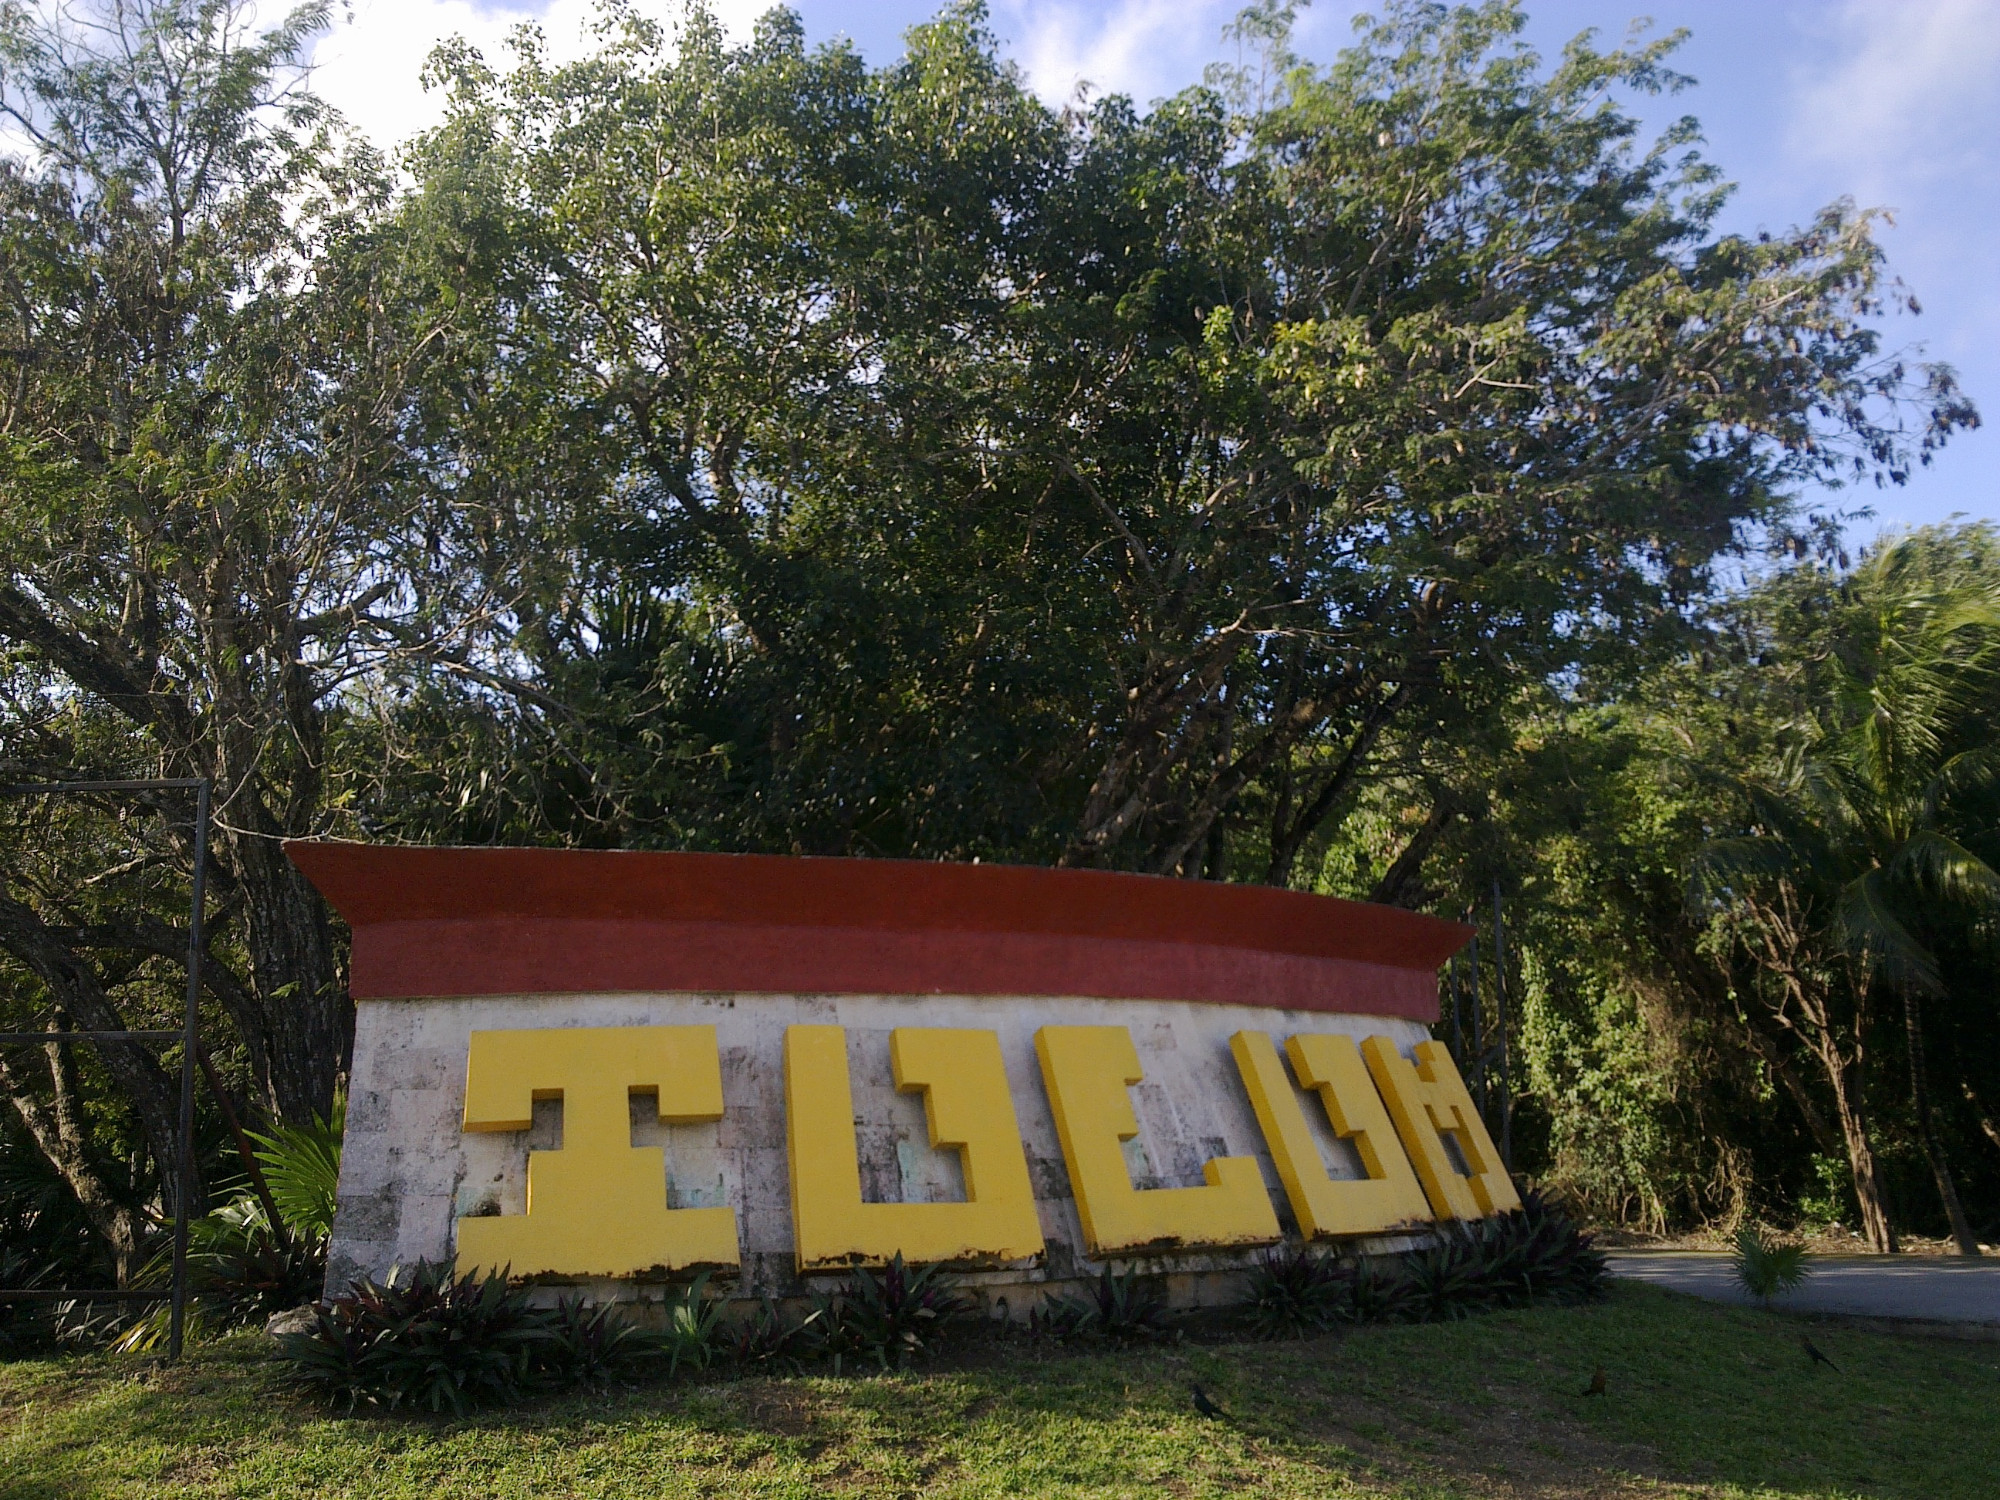 Tulum, Mexico